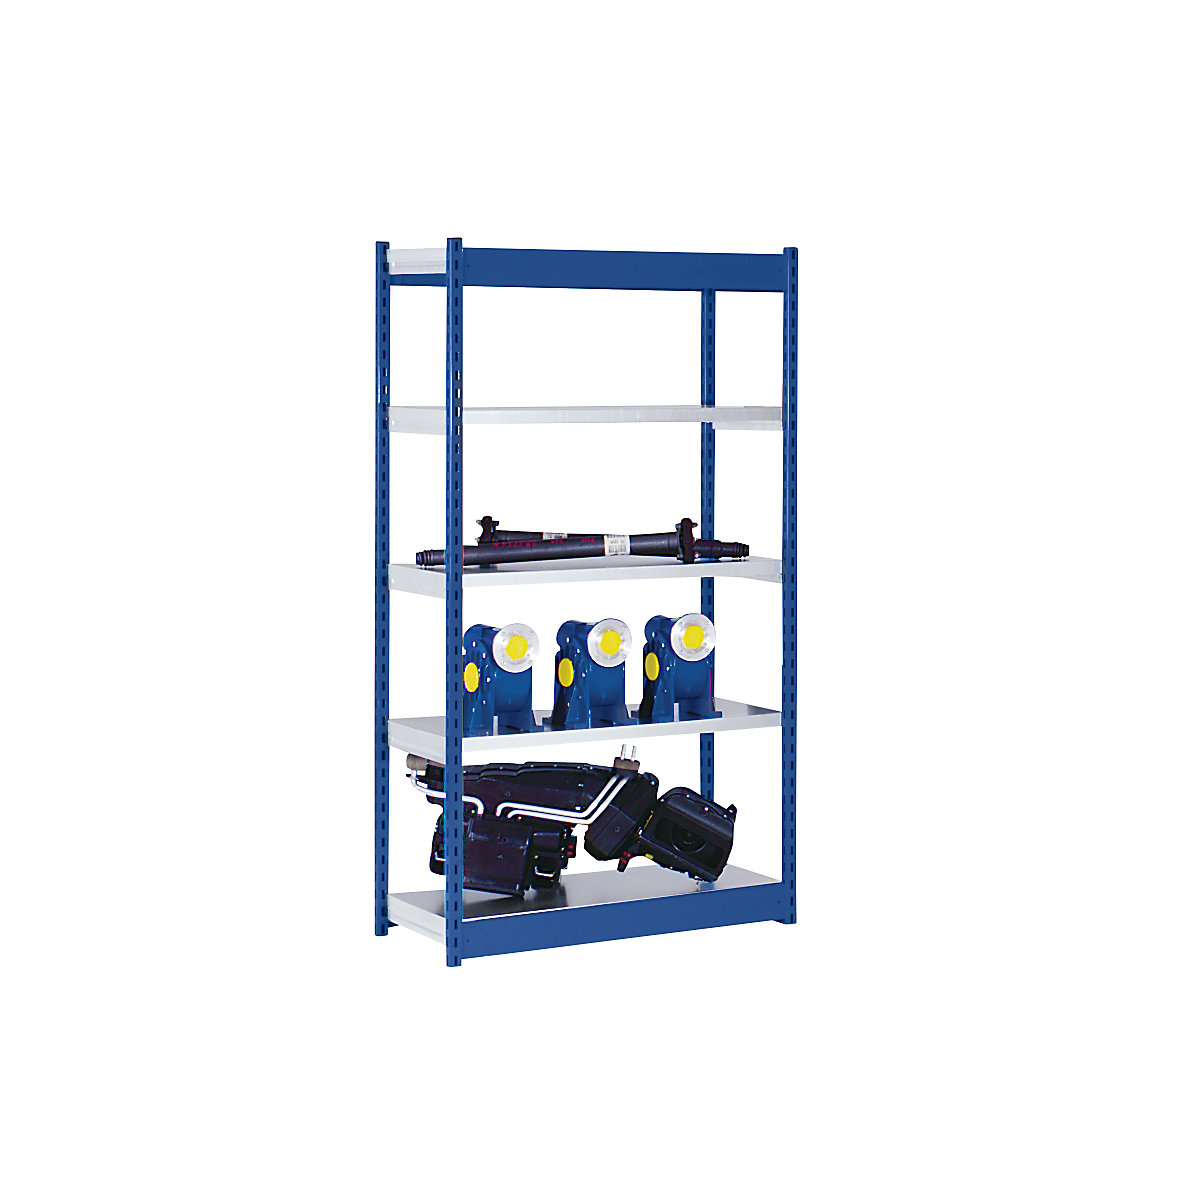 Stabilní zásuvný regál, jednostranný – hofe, výška regálu 2000 mm, modrý / pozinkovaný, šířka police 1025 mm, základní regál, šířka x hloubka 1025 x 800 mm-7